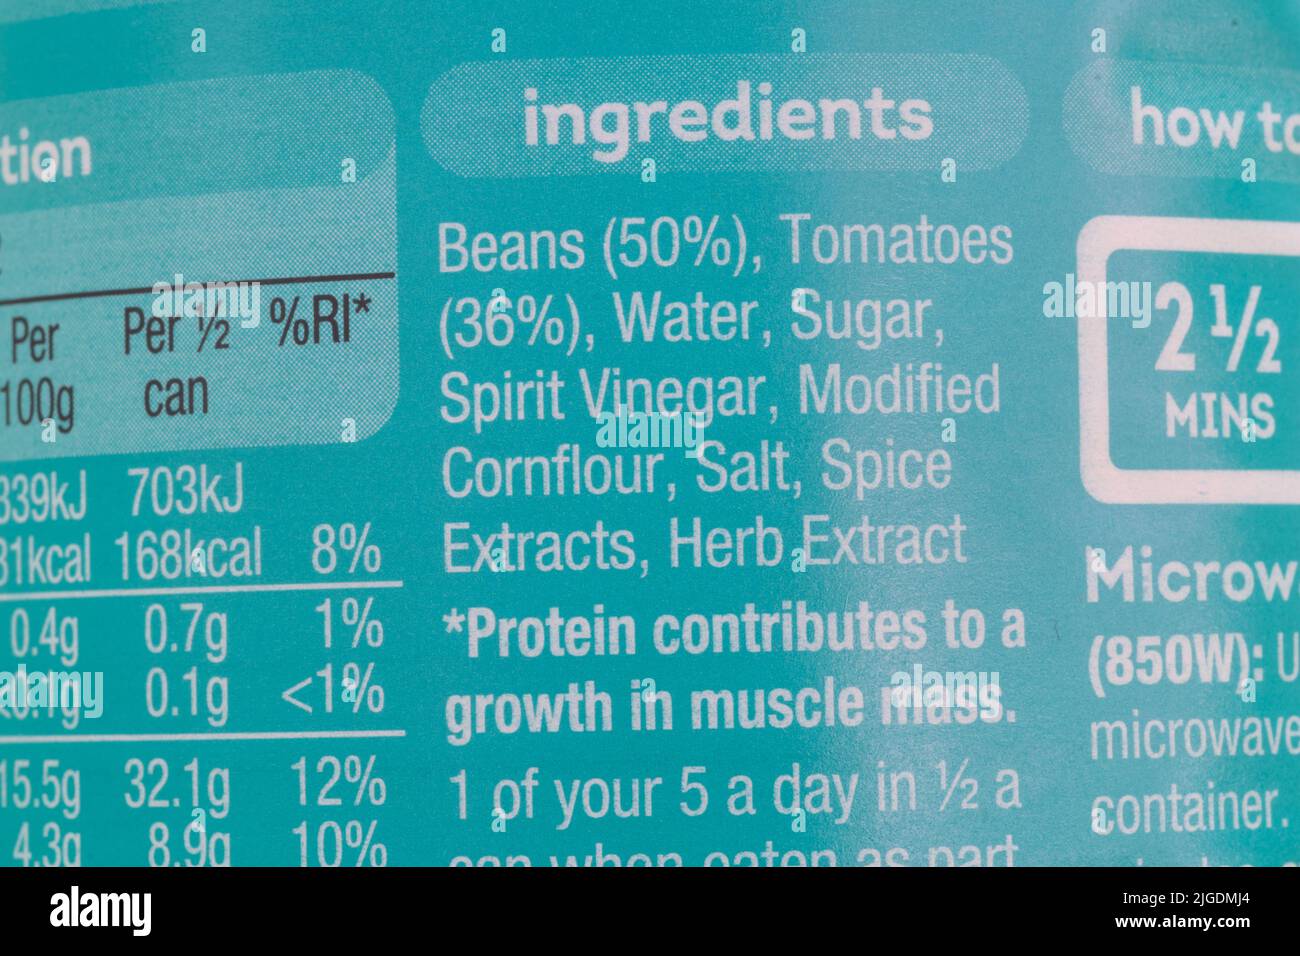 Lista de ingredientes en lata de Heinz Beanz en una rica salsa de tomate. Texto 1 de sus 5 al día. Frijoles, tomates, agua, azúcar, flor de maíz, sal, hierba, especias Foto de stock